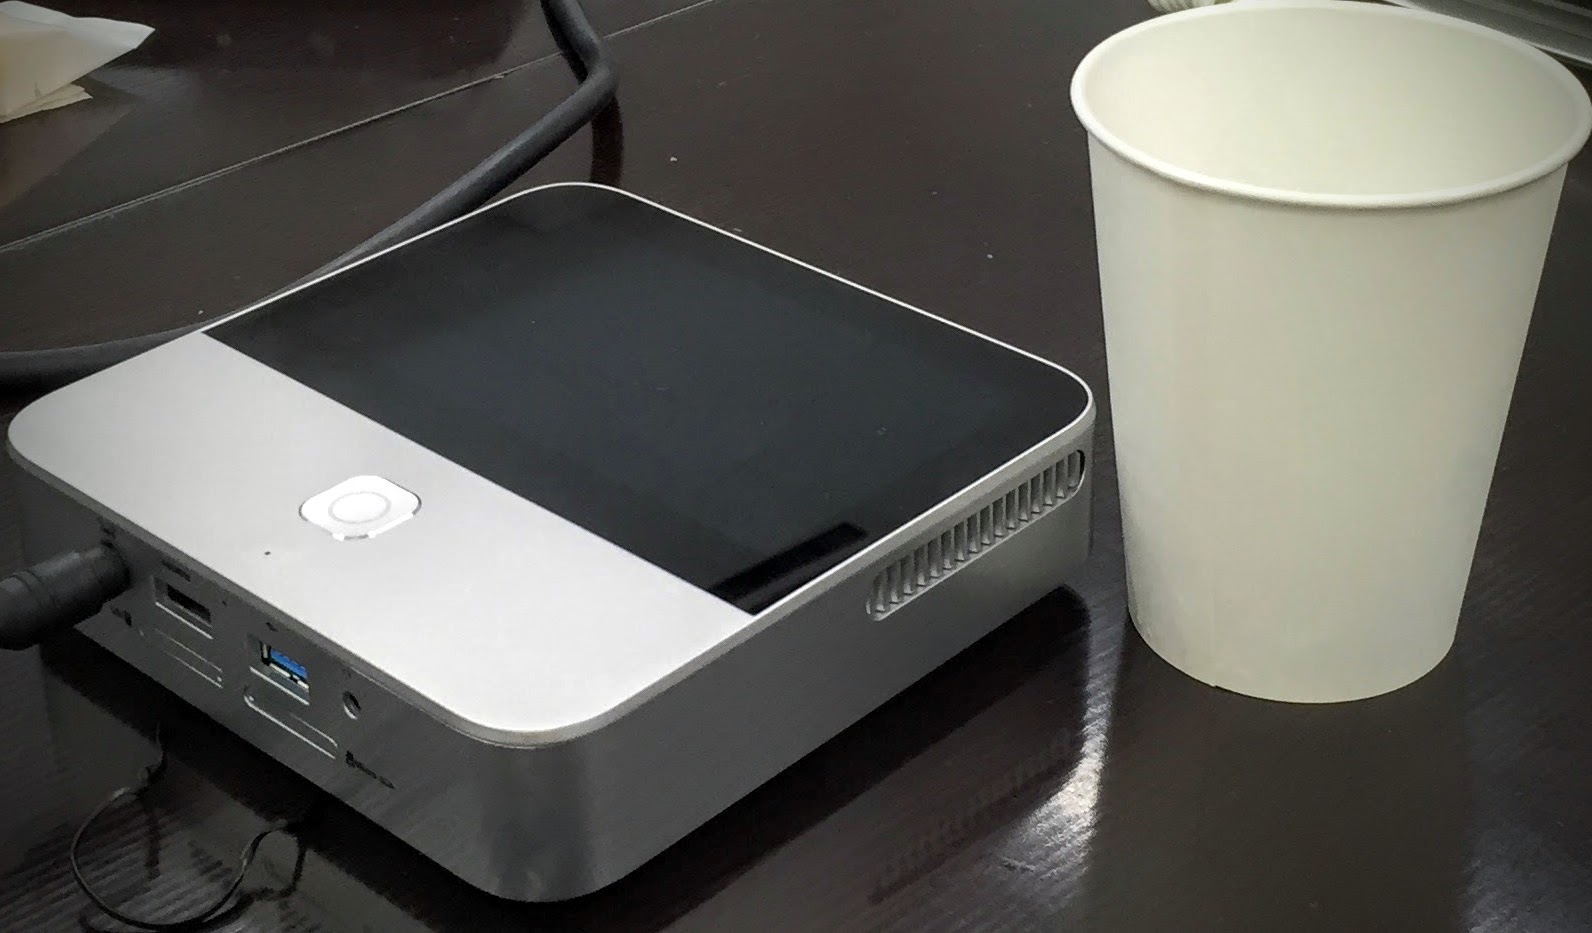 SoftBankモバイルシアターと紙コップで大きさ比較